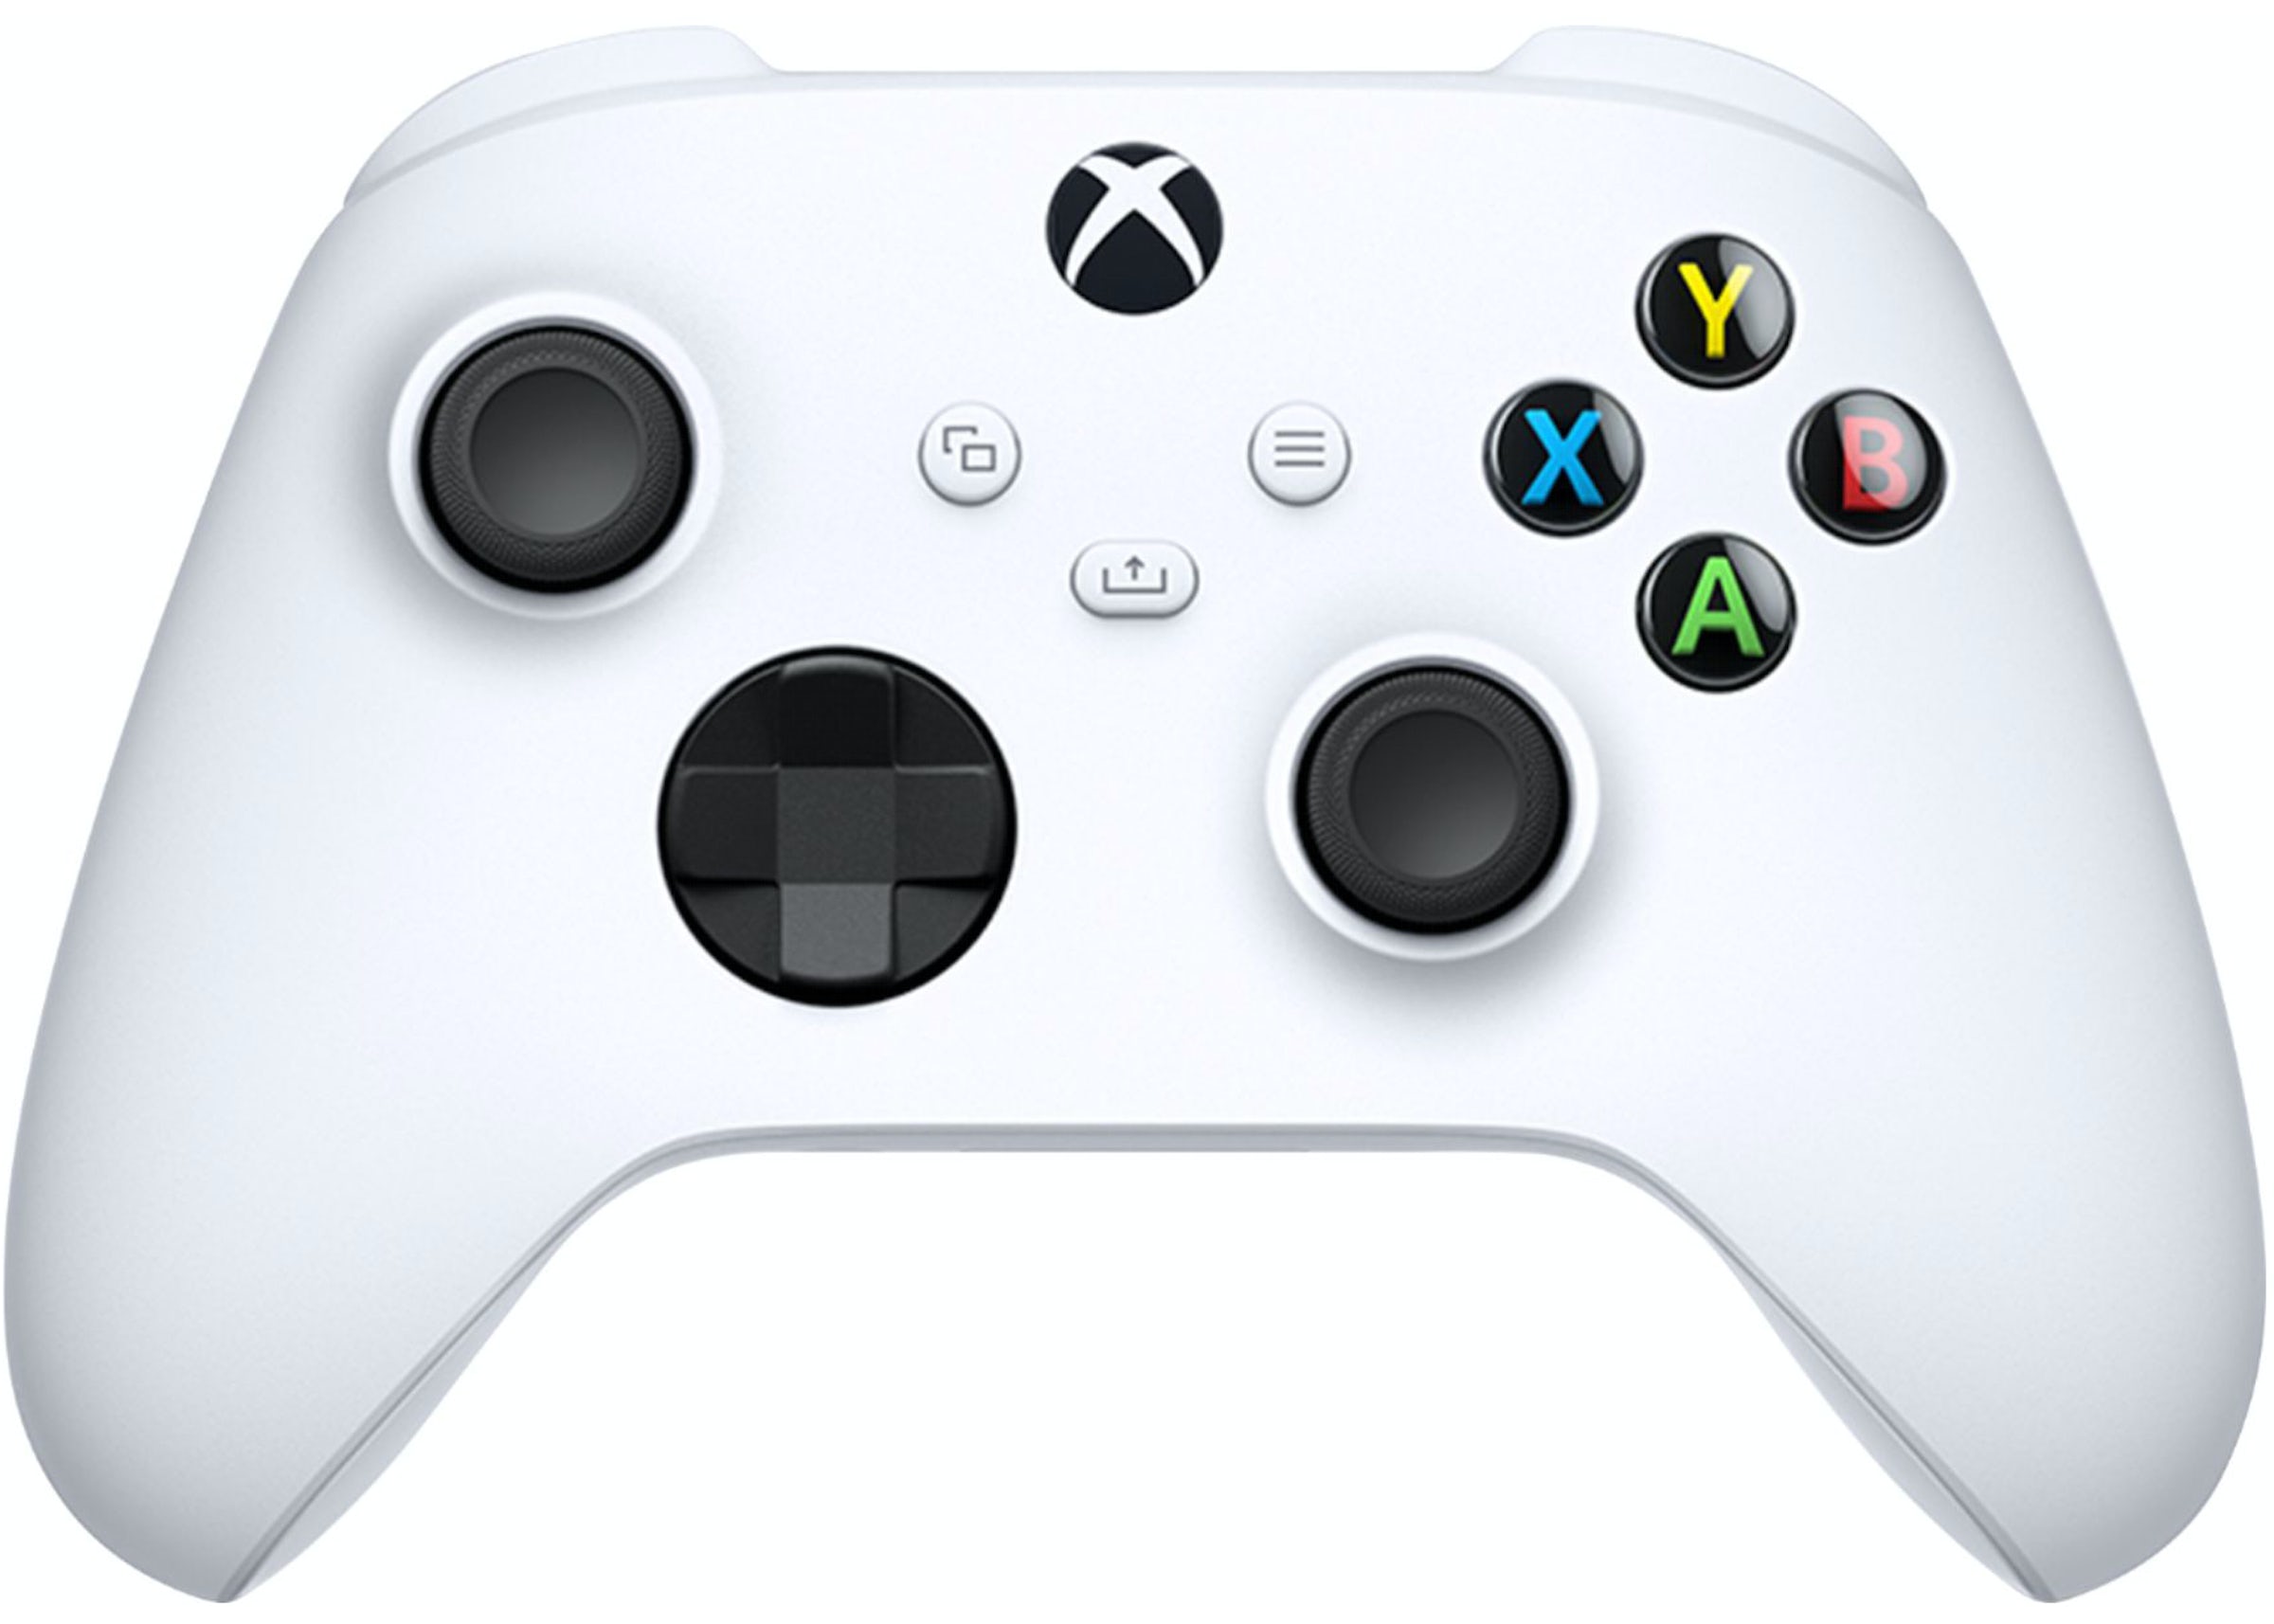 Archivo:Xbox Series X mit Controller.jpg - Wikipedia, la enciclopedia libre